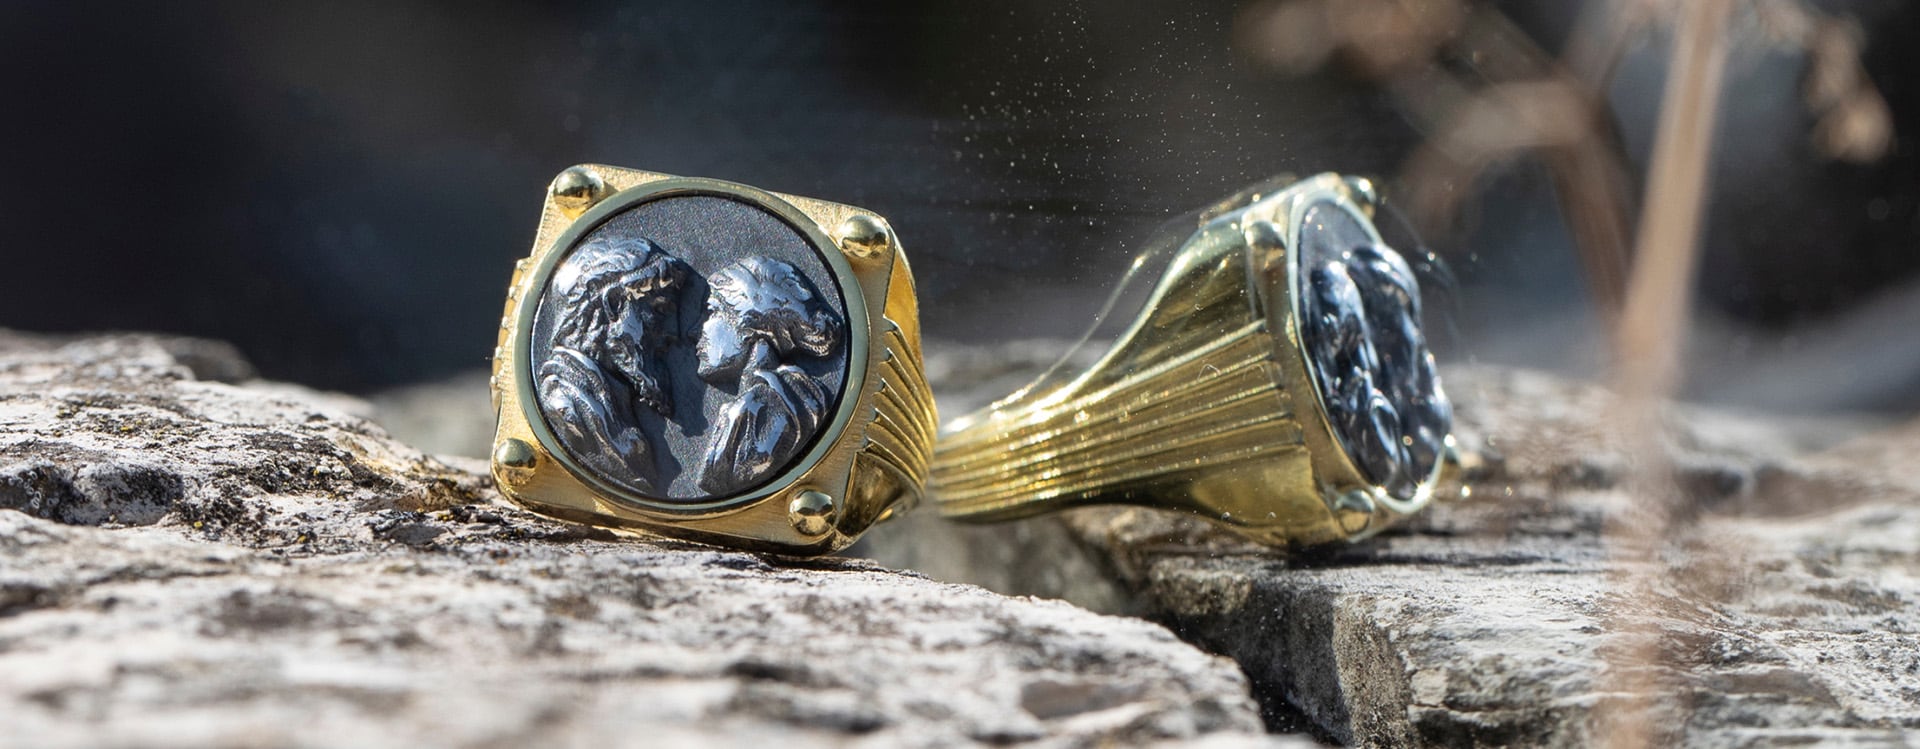 Odissea, l’esclusiva capsule collection di gioielli in argento ideata da Levante, ispirata da uno dei due più grandi poemi epici greci attribuiti al poeta Omero.